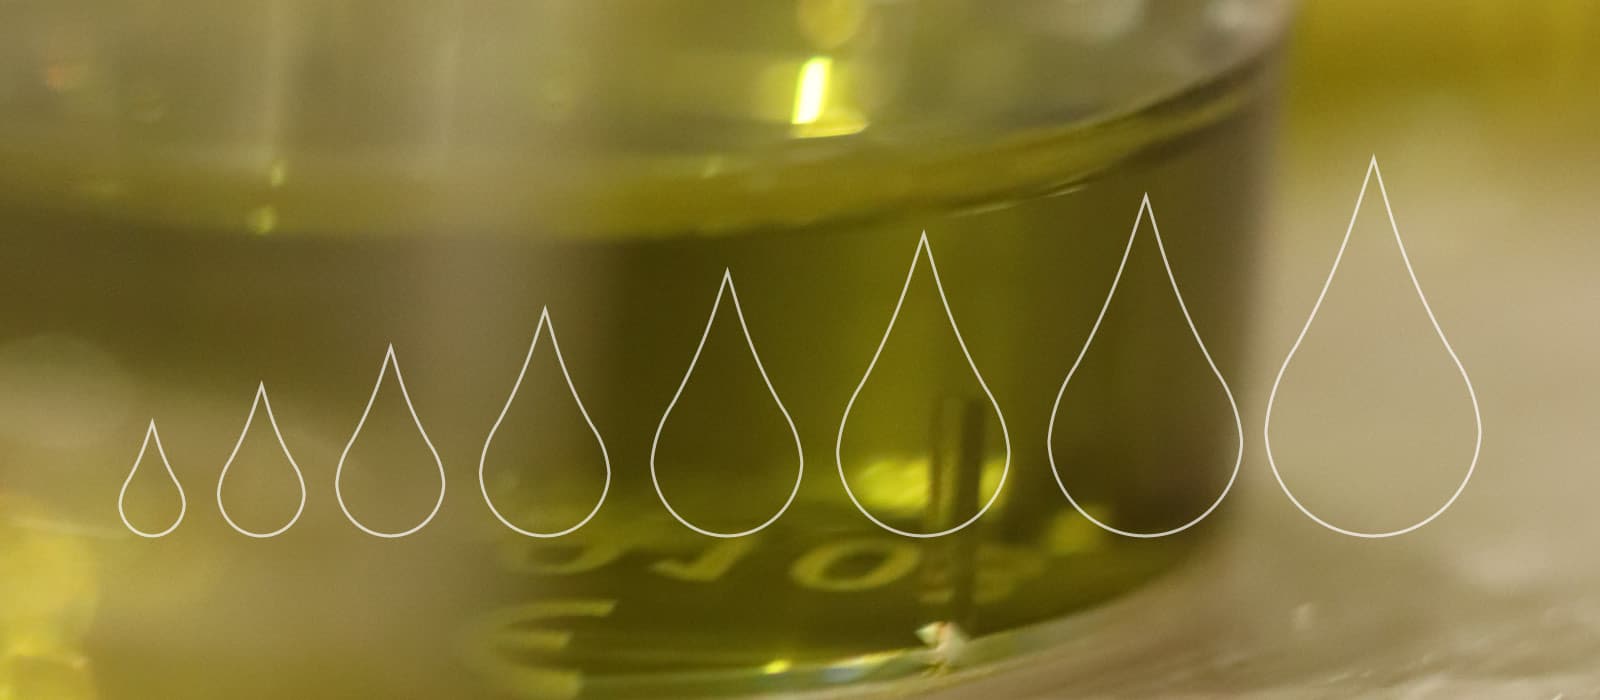 Isbilya ¿Por qué está subiendo el precio del aceite de oliva?